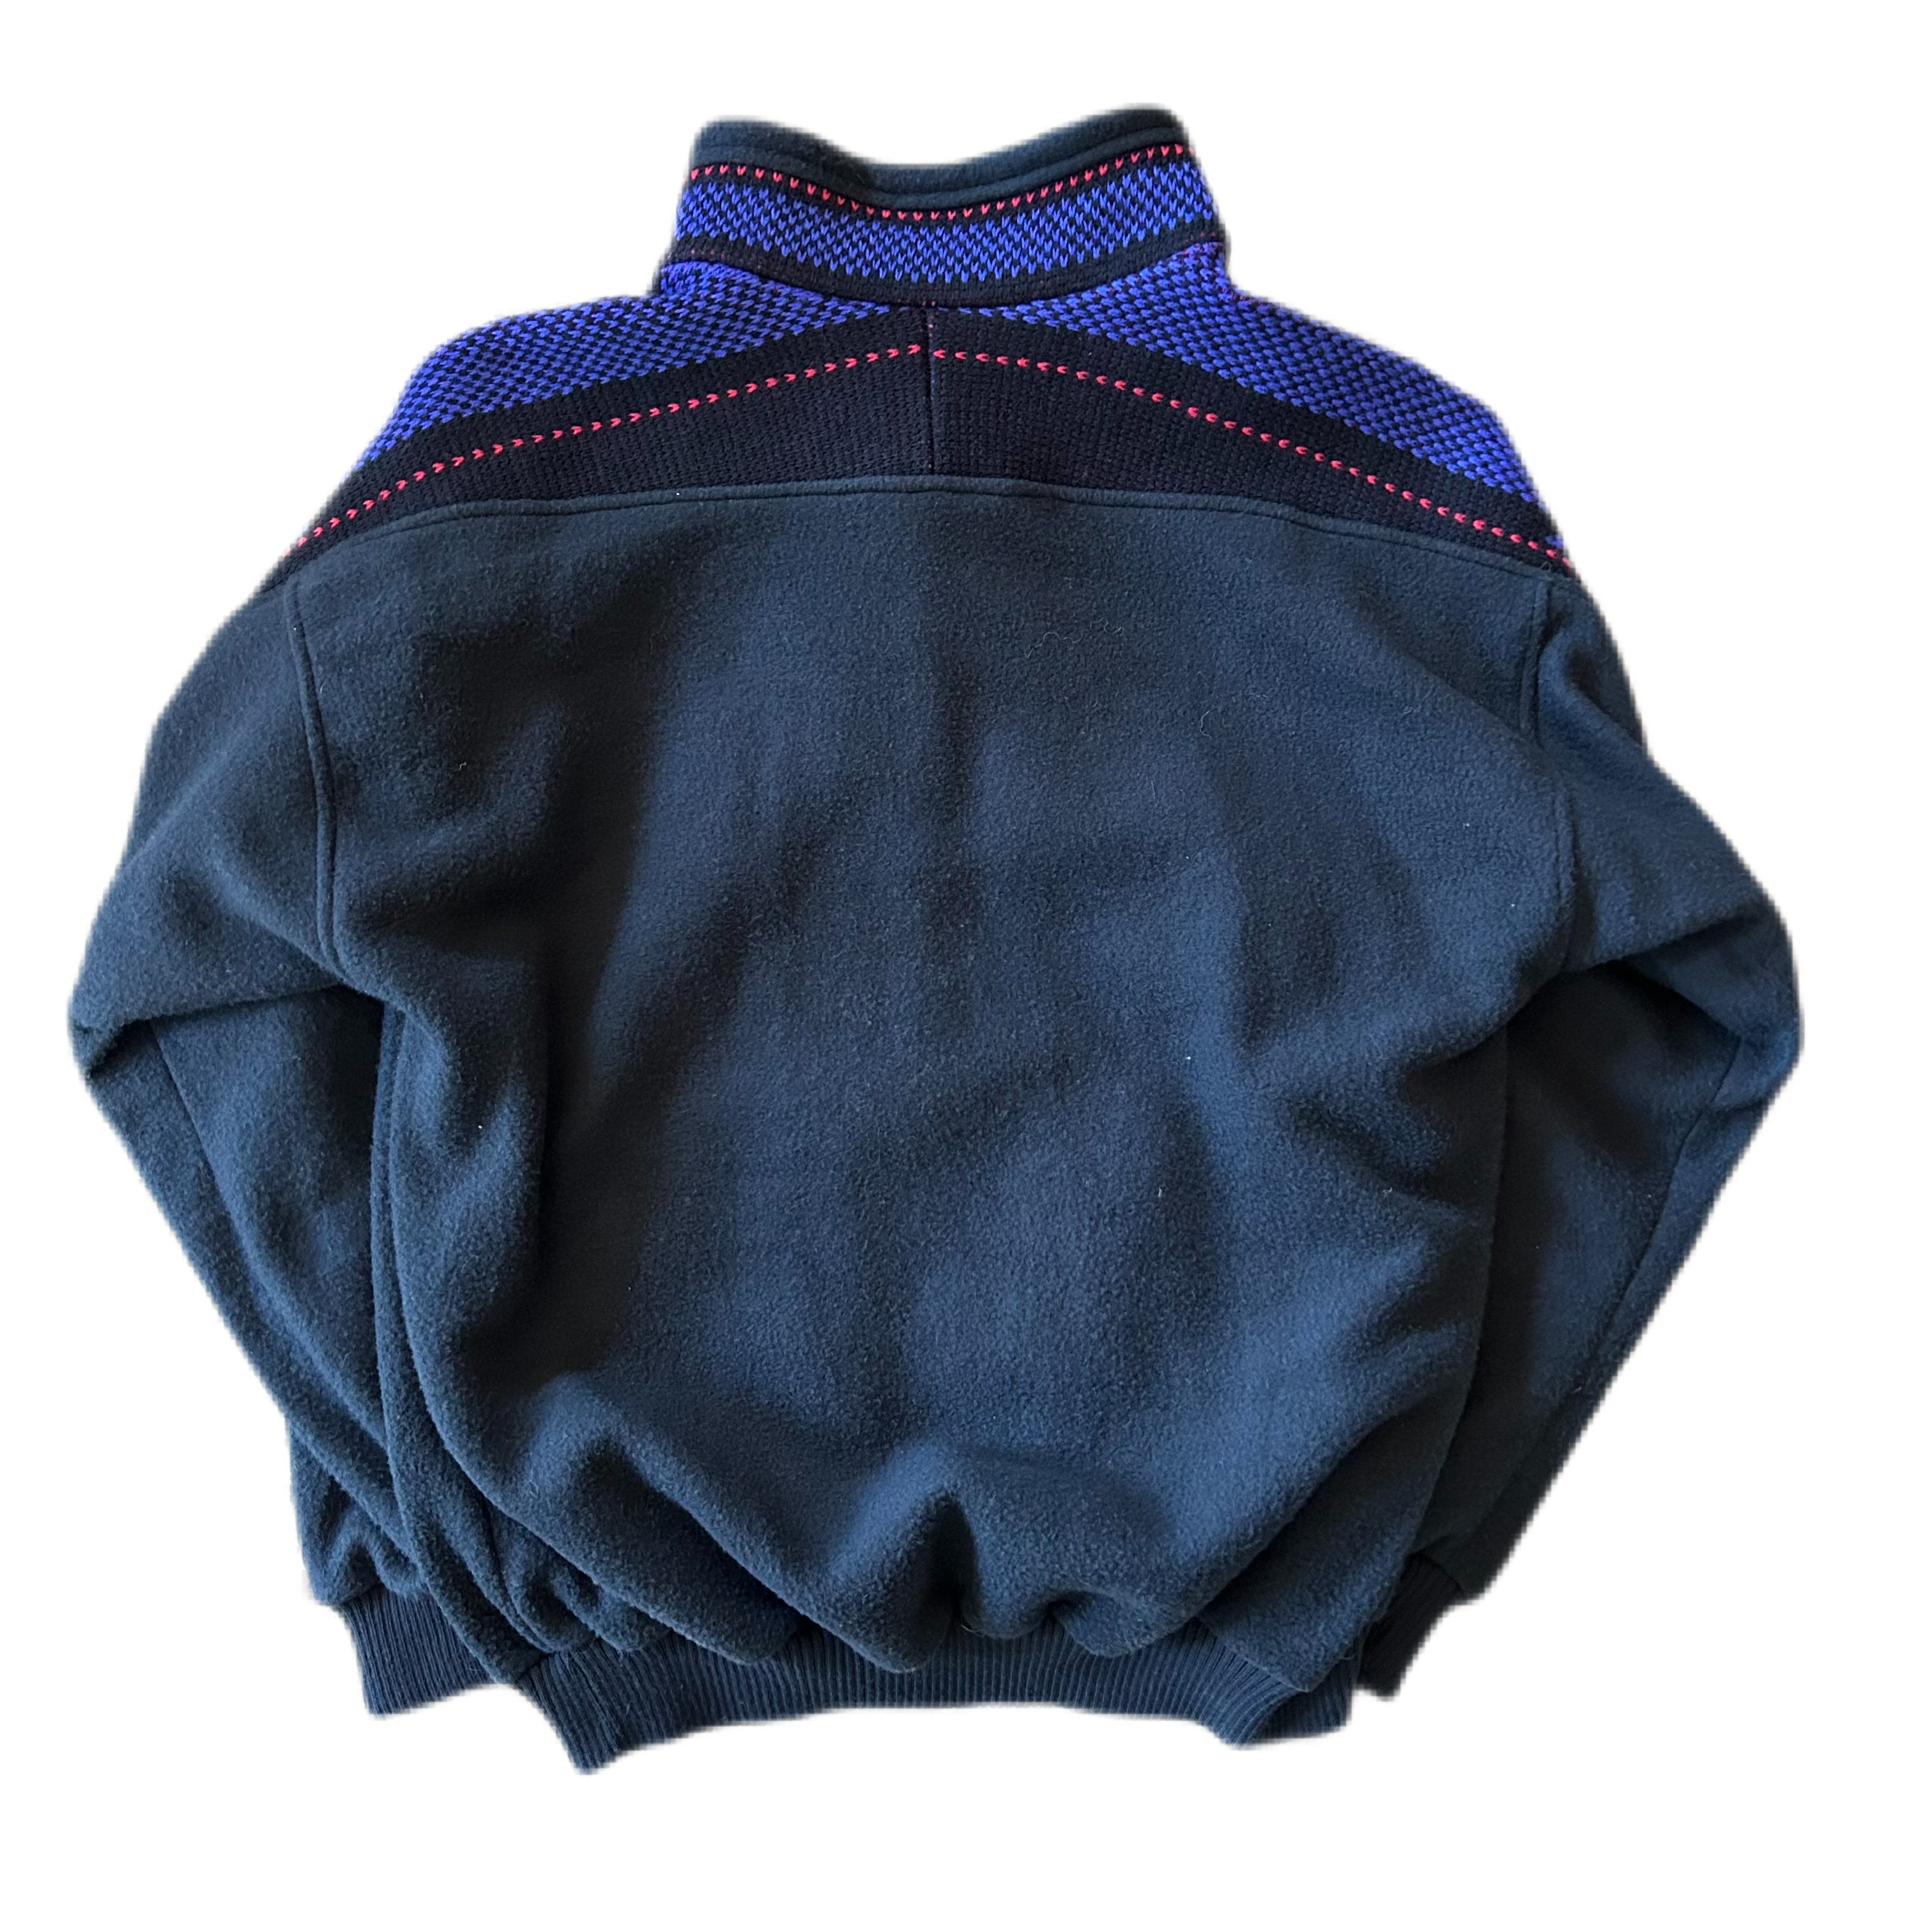 Vintage 1990s Jackson Hole Jacket Fleece